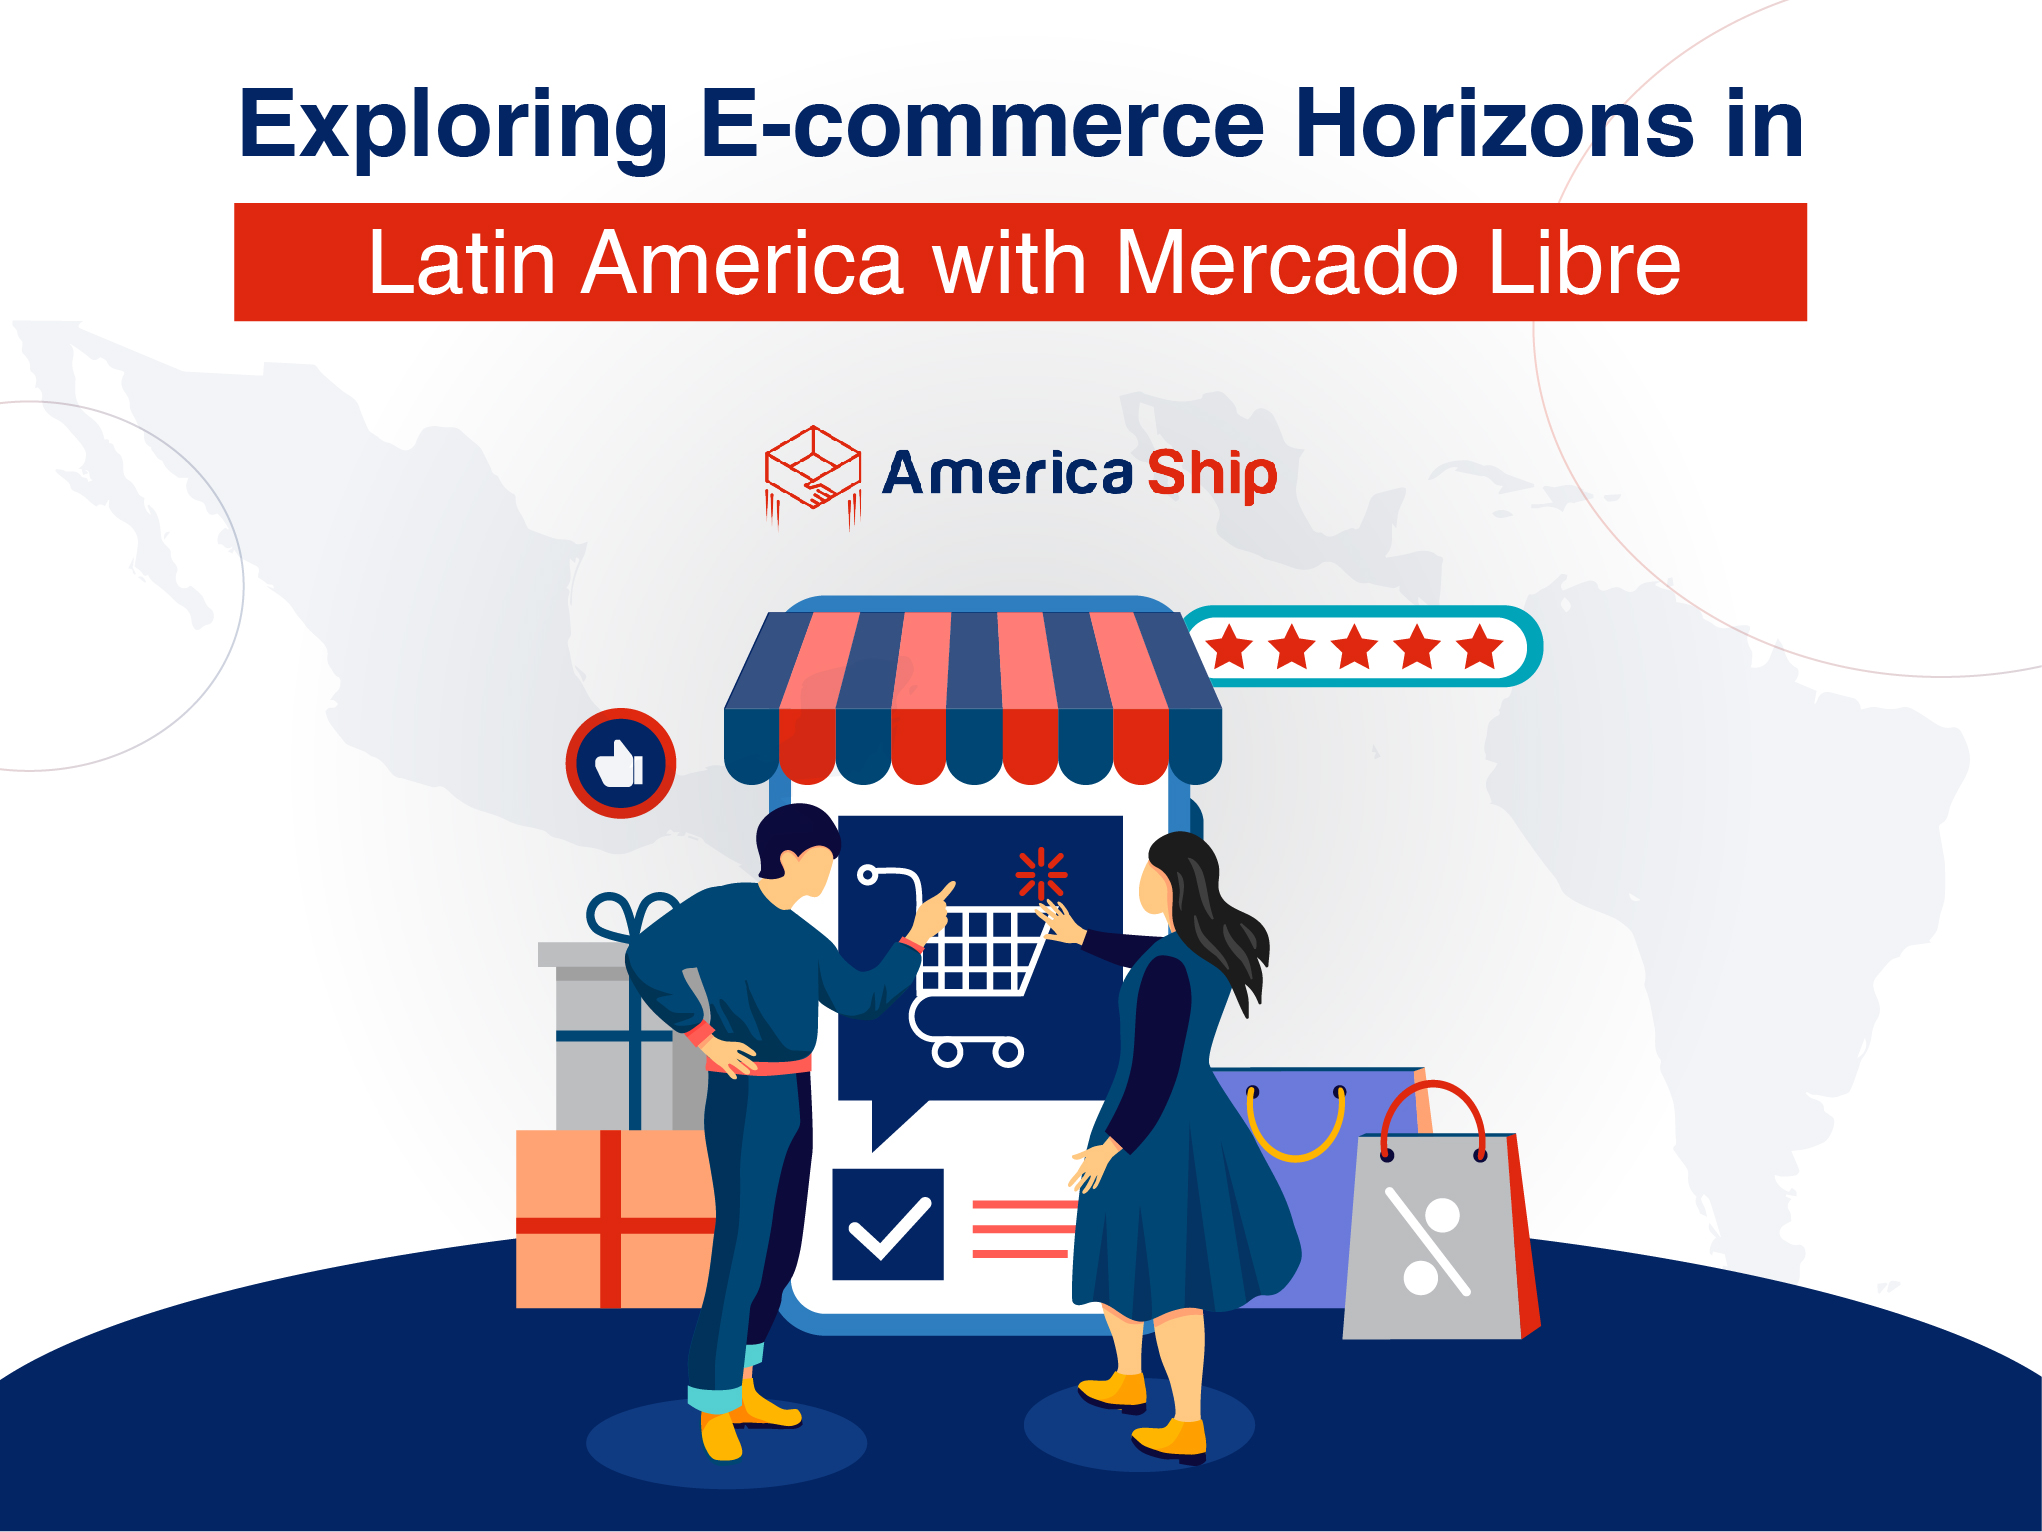 Explorando los horizontes del comercio electrónico en América Latina con Mercado Libre